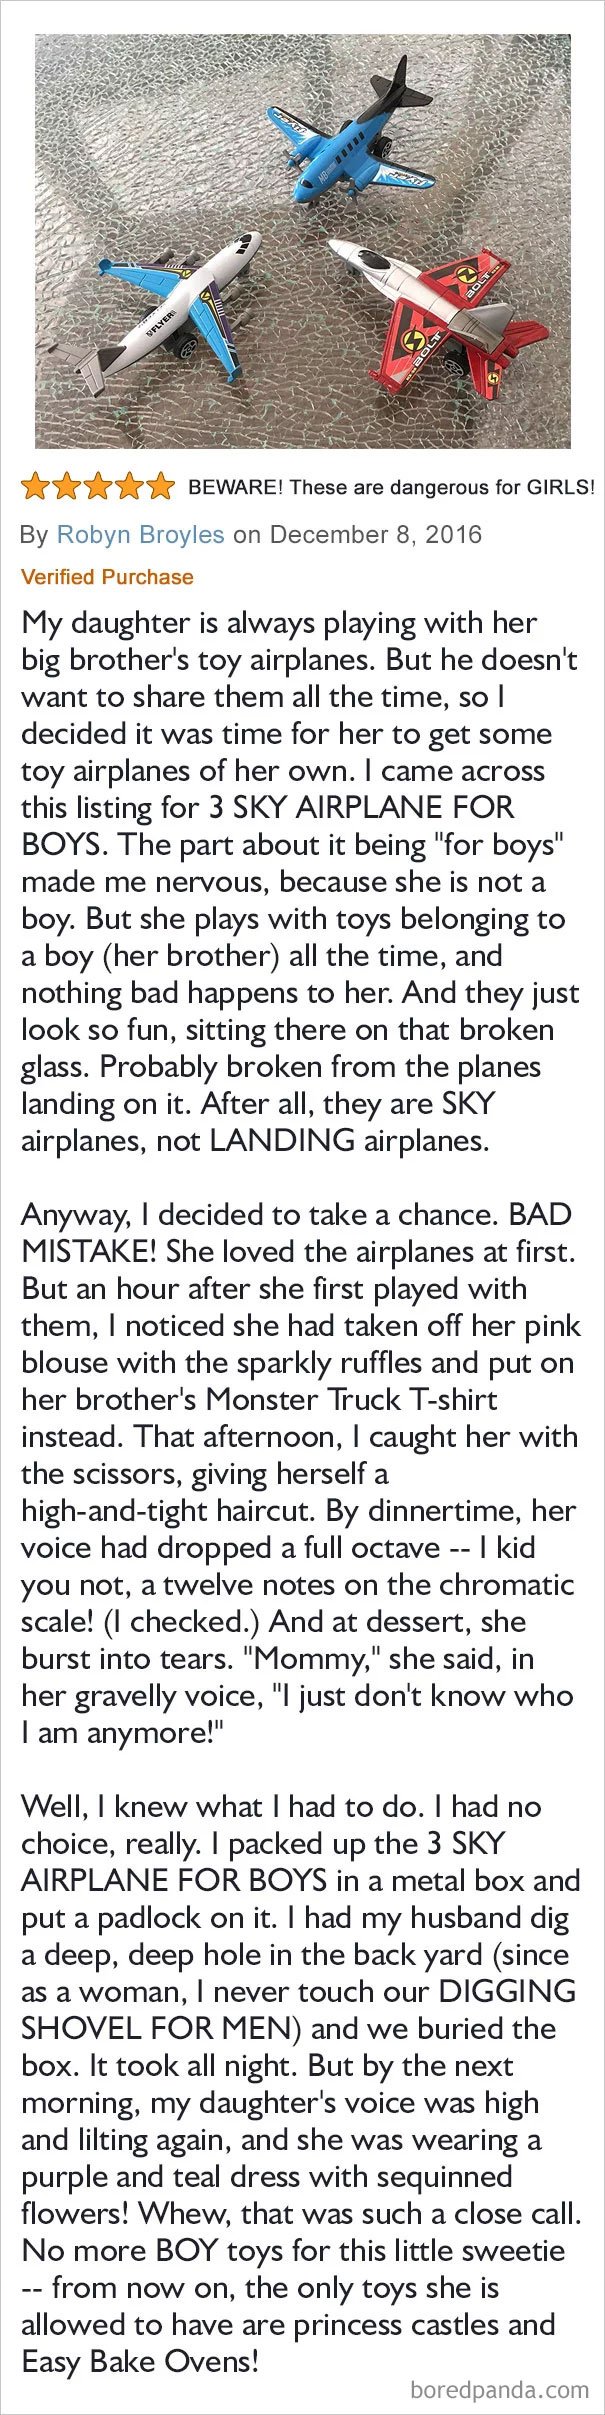 3 Sky Airplane For Boys – Dangerous For Girls